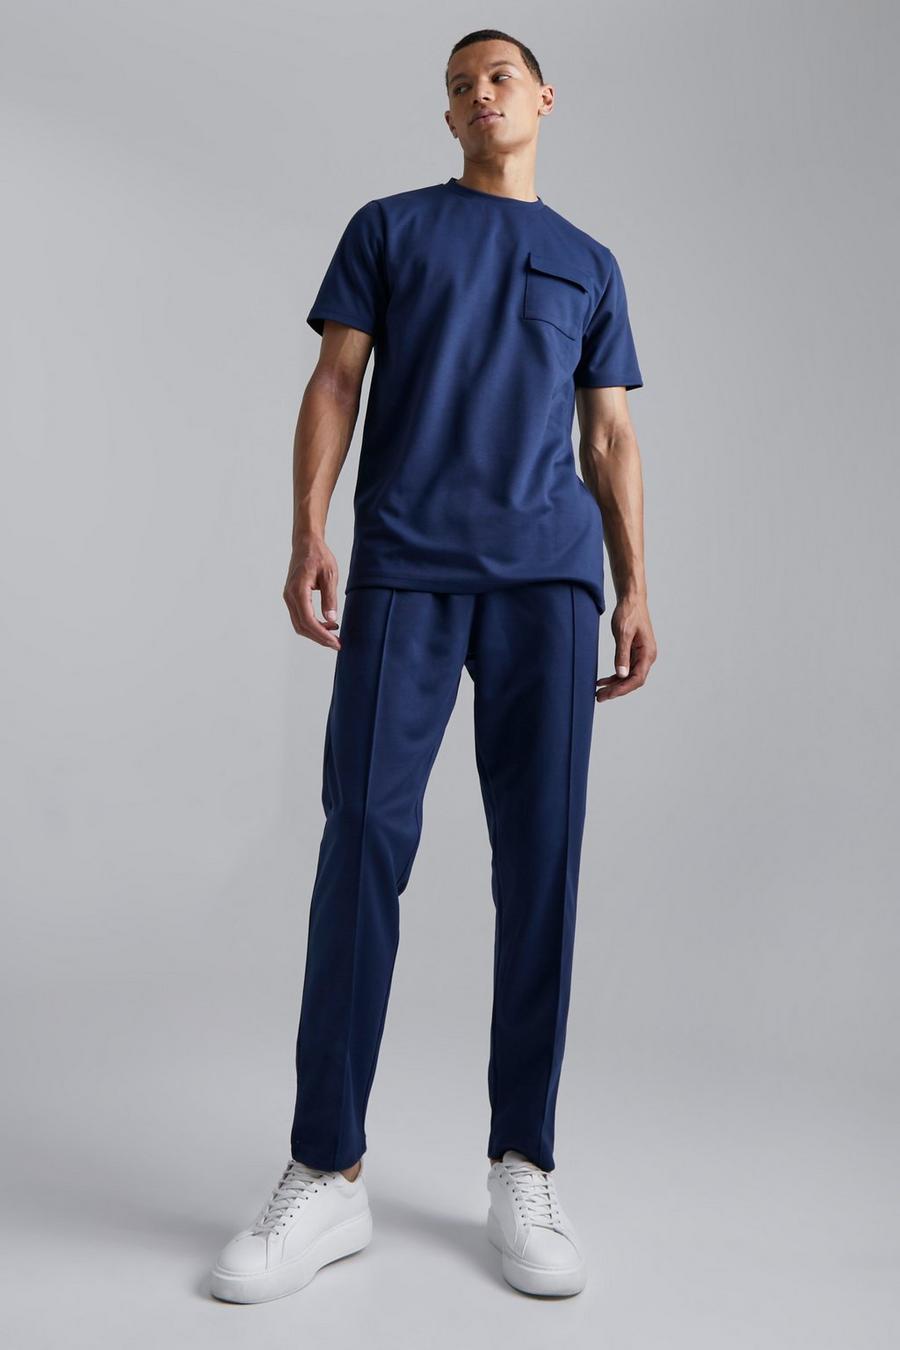 Navy marinblå Tall T-shirt i slim fit och joggers med avsmalnande ben